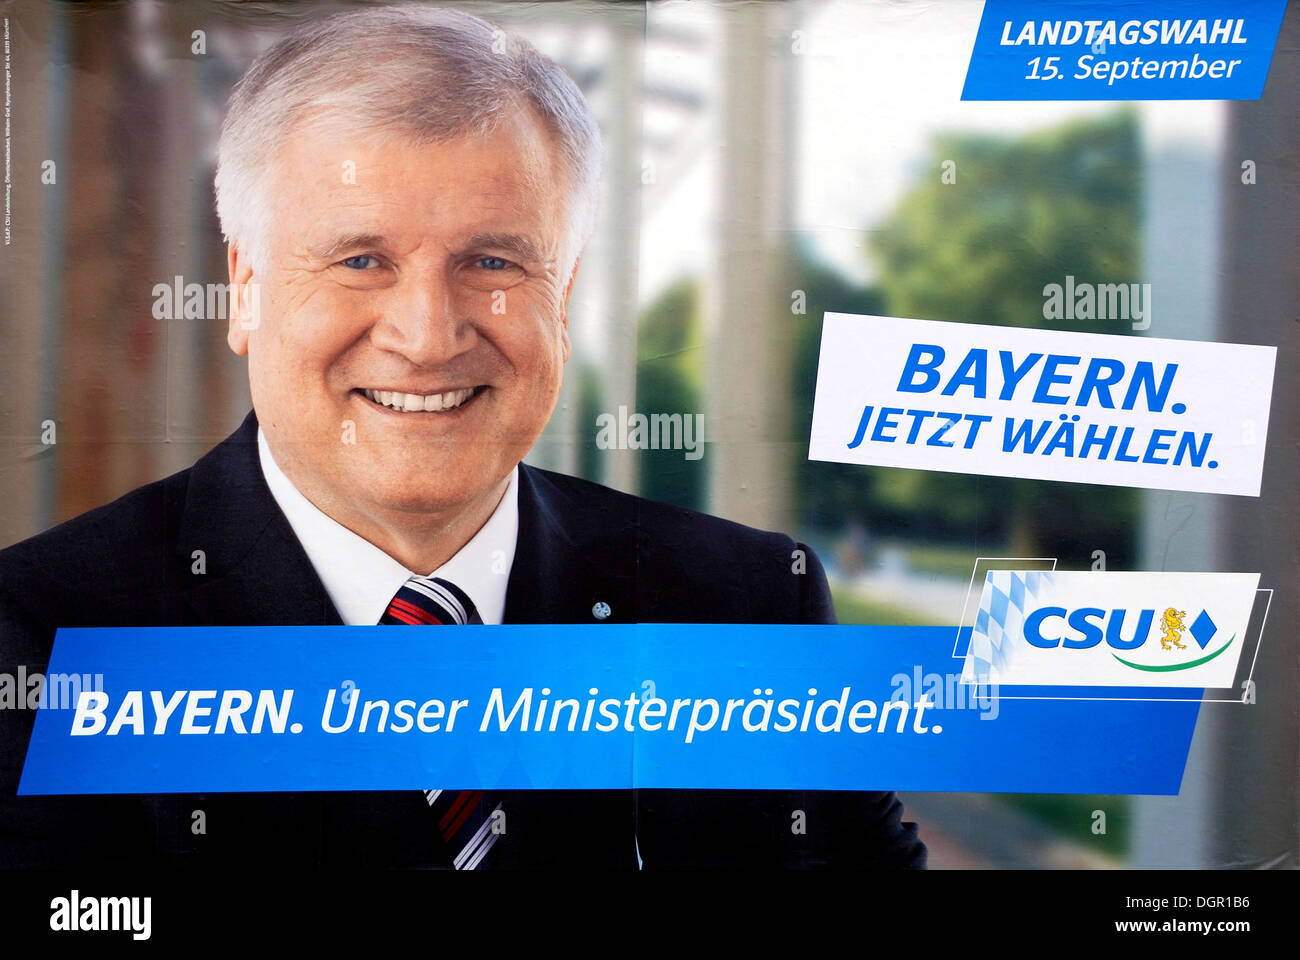 Plakatwerbung der CSU für den bayerischen Ministerpräsidenten Horst Seehofer für Landtagswahl in Bayern am 15.09.2013. Stockfoto